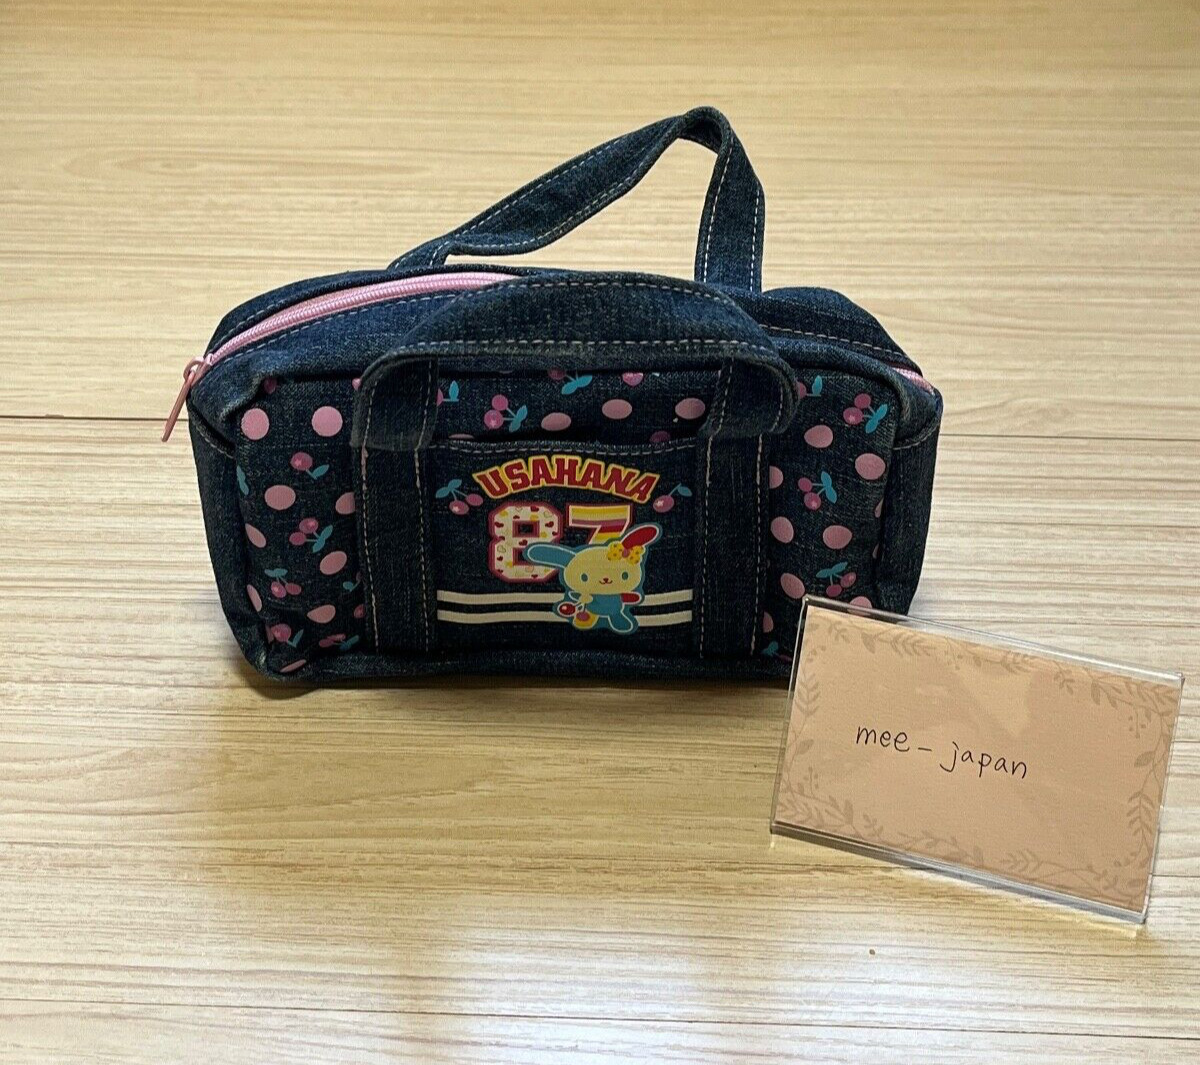 Sanrio Usahana Handbag Bag Mini Pouch 20cm × 14cm Denim Fabric 2003 Rare Japan